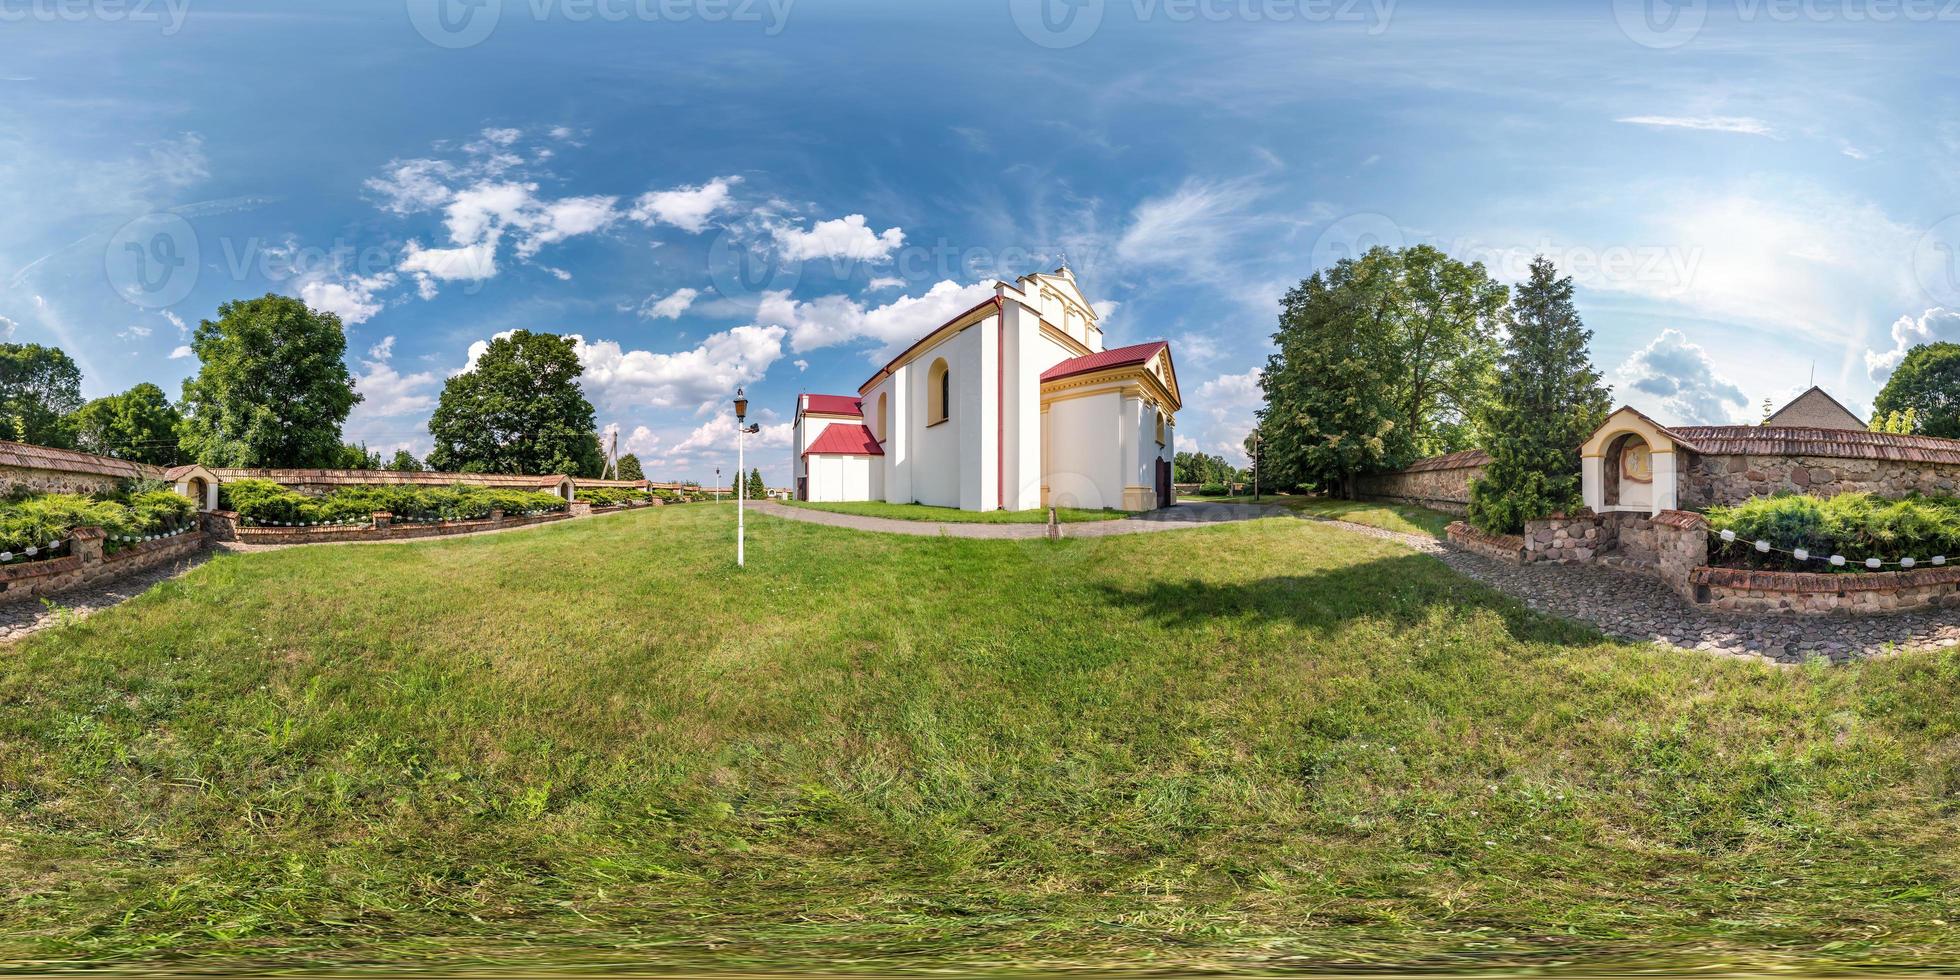 Vollständiges, nahtloses sphärisches Hdri-Panorama 360-Grad-Winkelansicht in der Nähe einer neugotischen katholischen Kirche in einem kleinen Dorf in equirectangularer Projektion mit Zenit und Nadir, ar vr-Inhalt foto